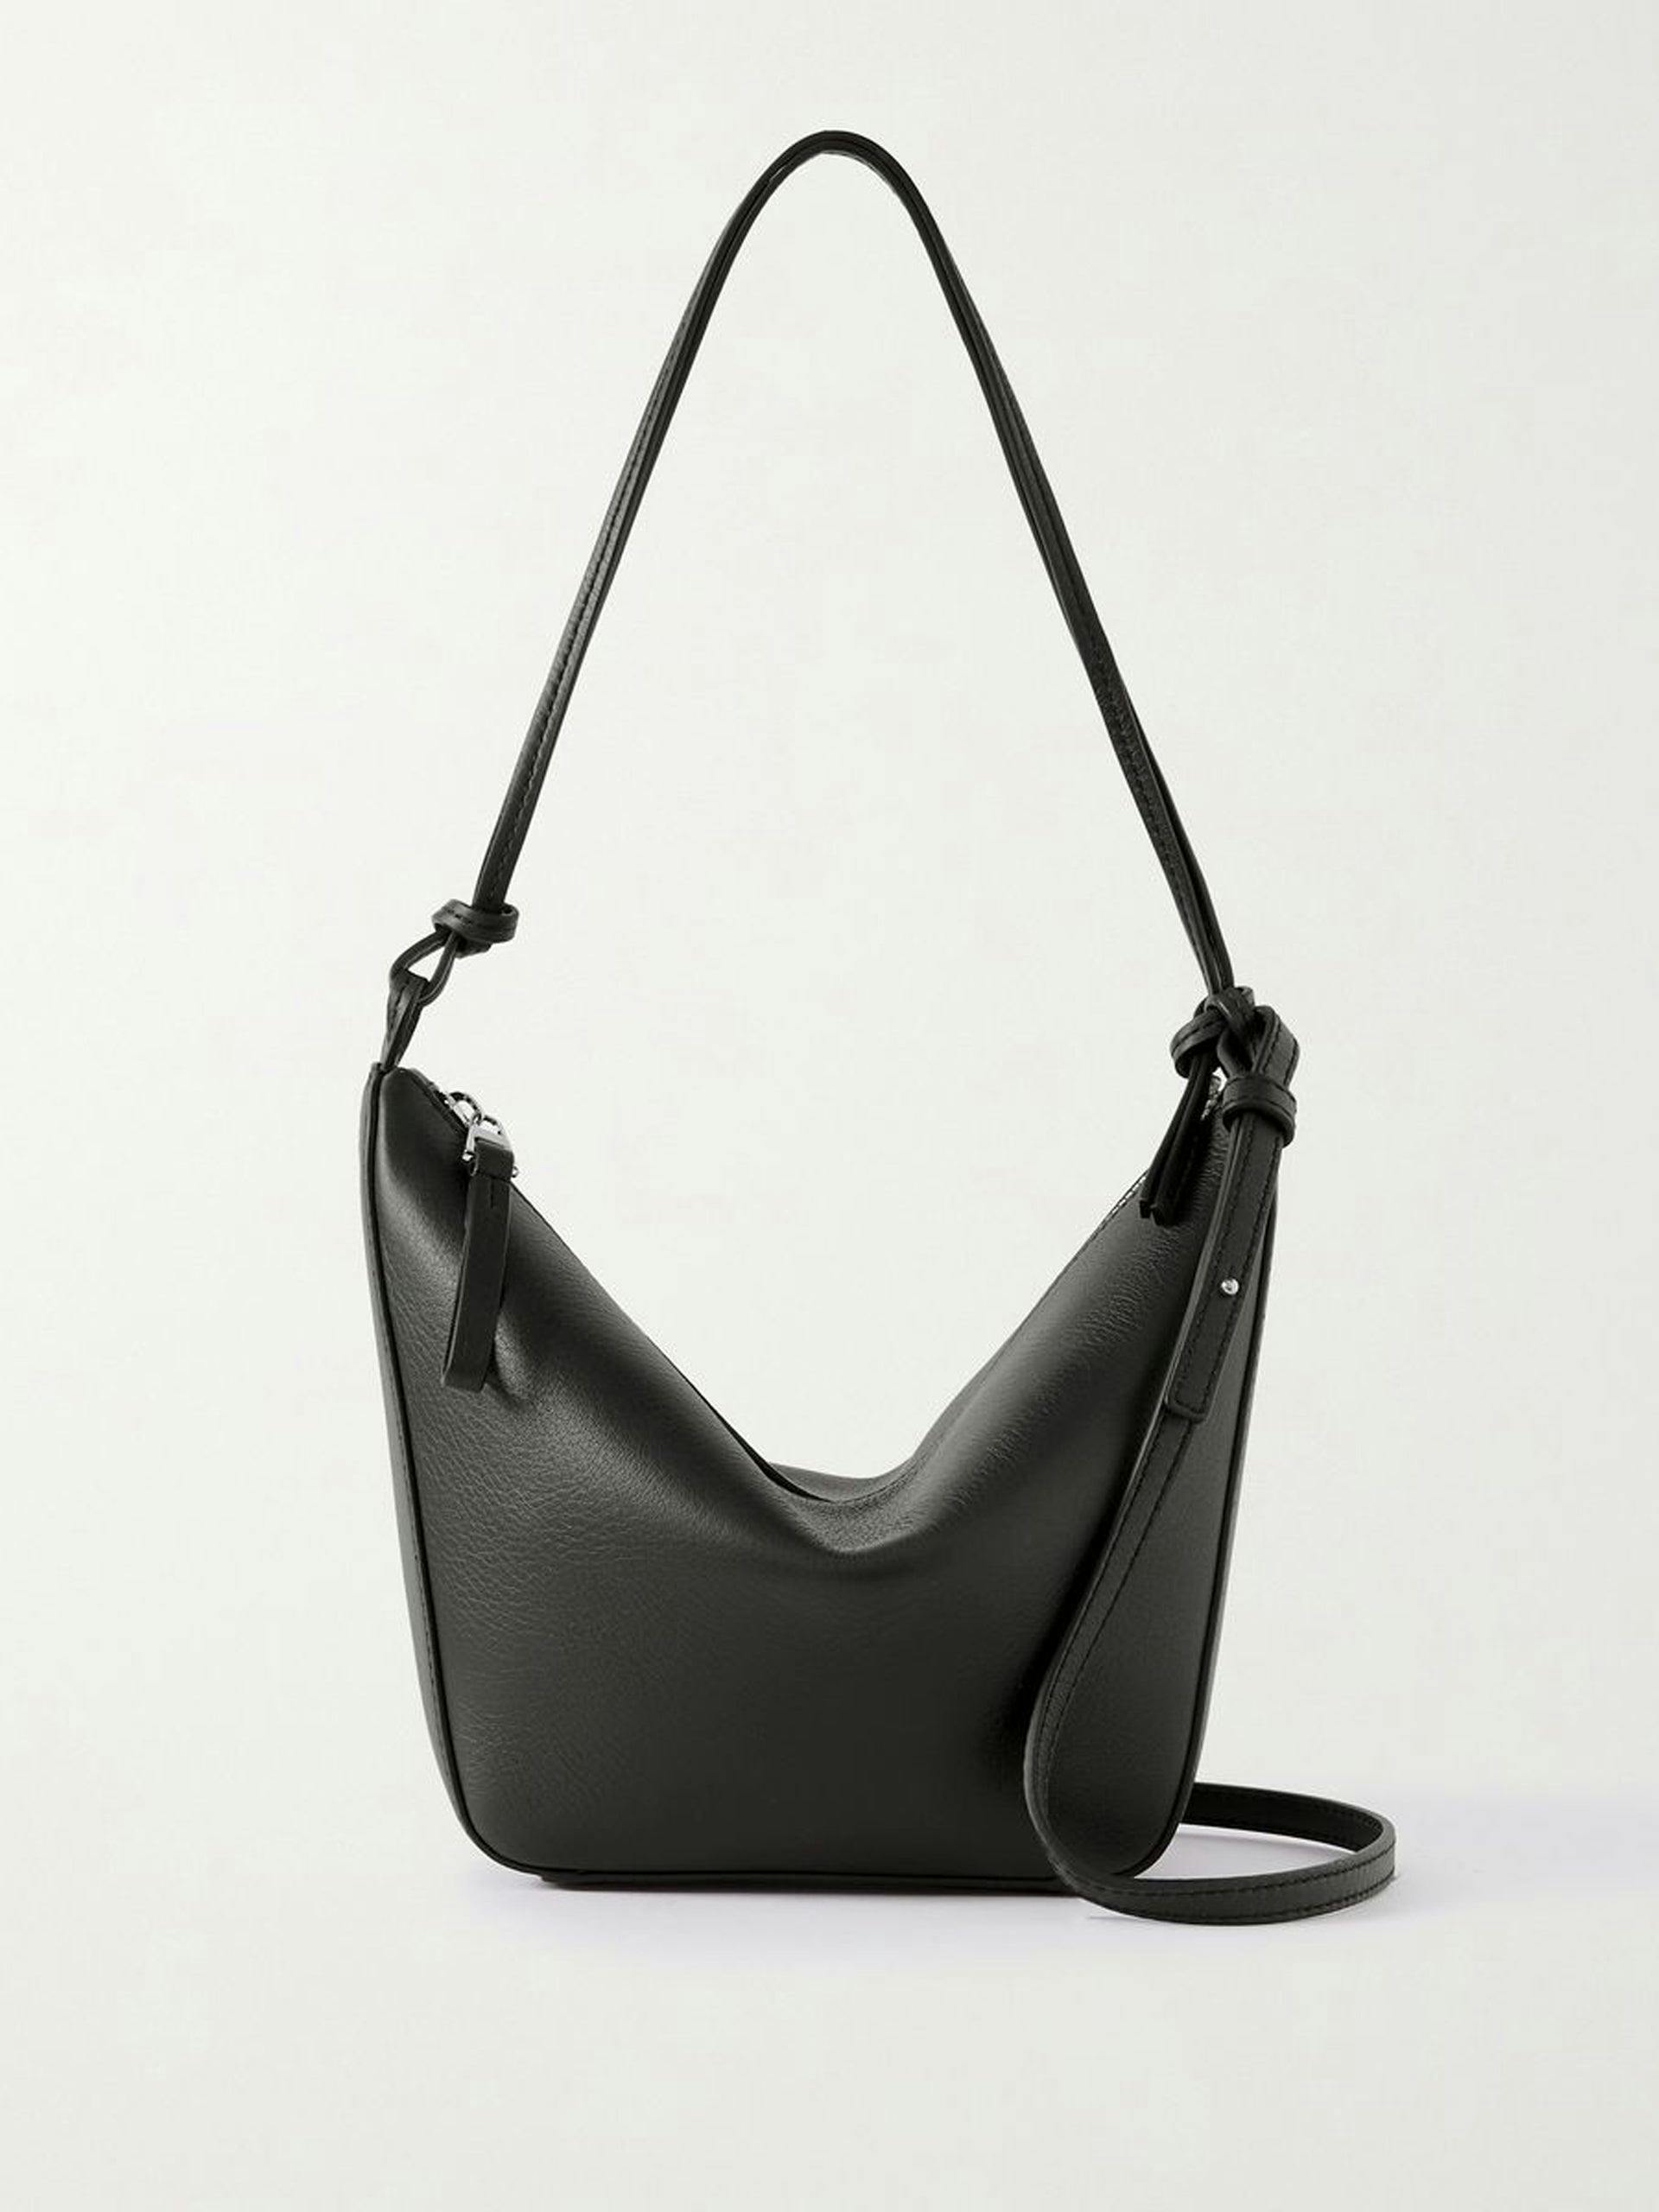 Black mini leather shoulder bag